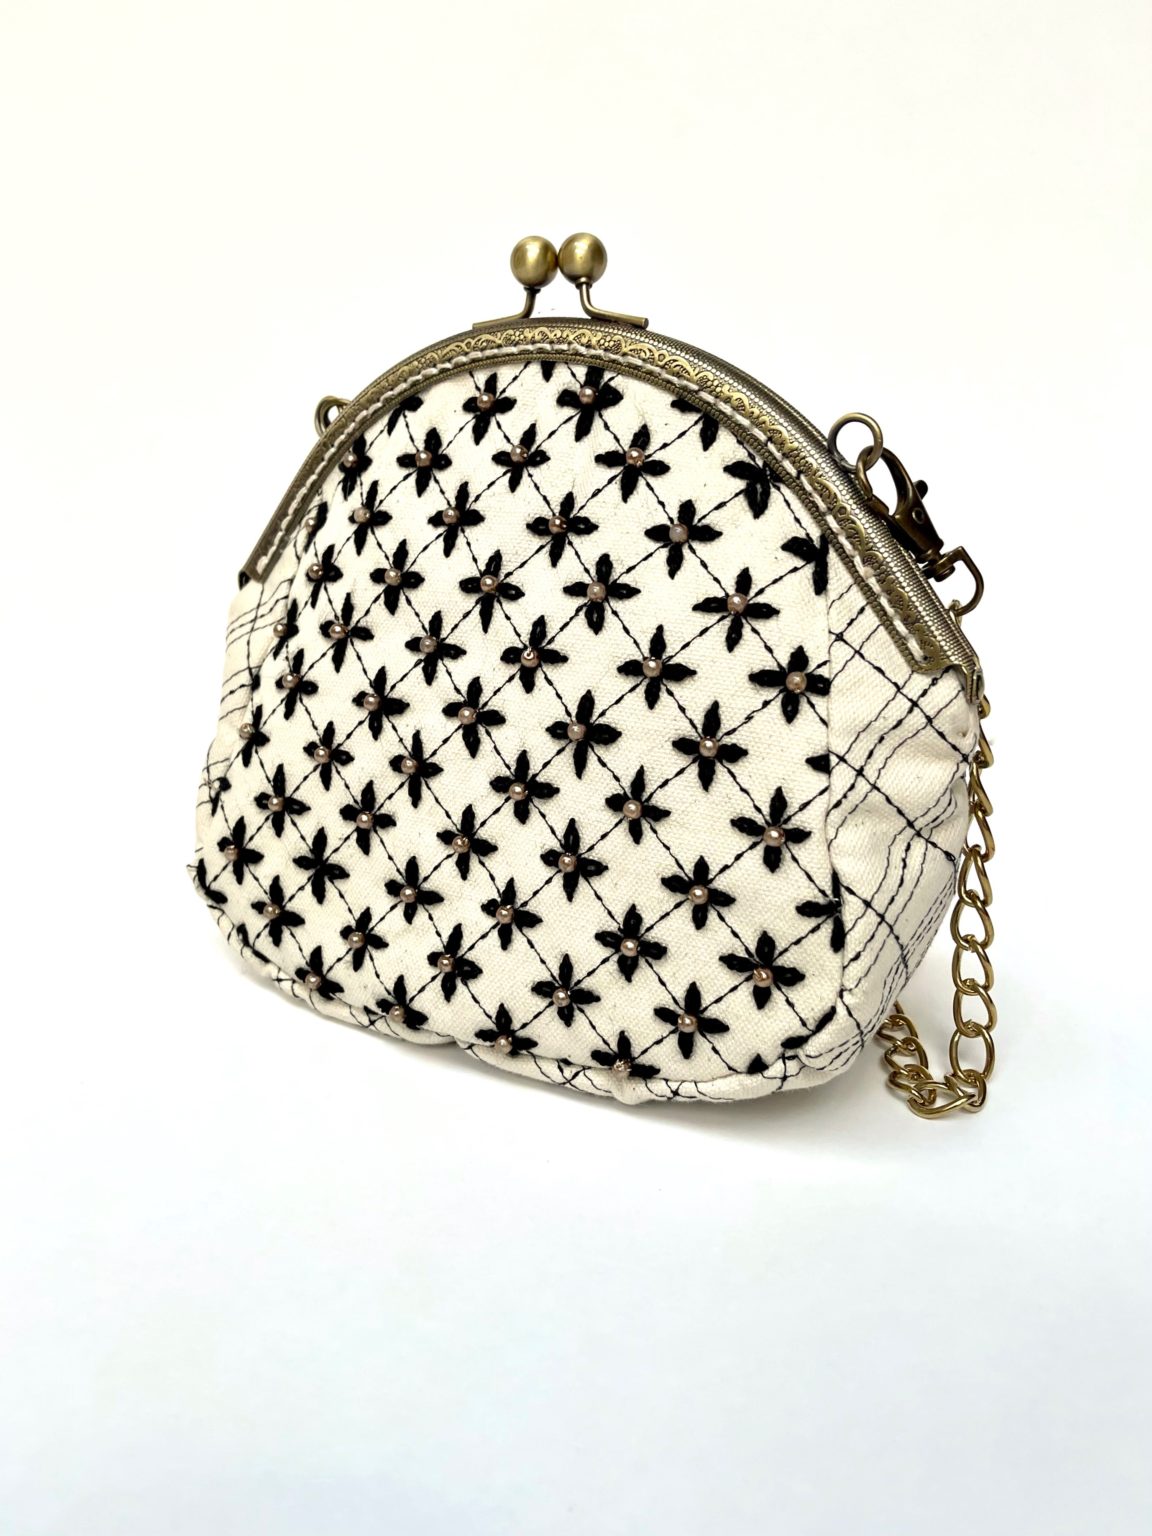 Vintage Floral Embroidered Frame Bag, Retro Evening Clutch Purse, Formal  Banquet Shoulder Bag & Handbag | Clutch purse evening, Embroidery bags,  Purses and bags